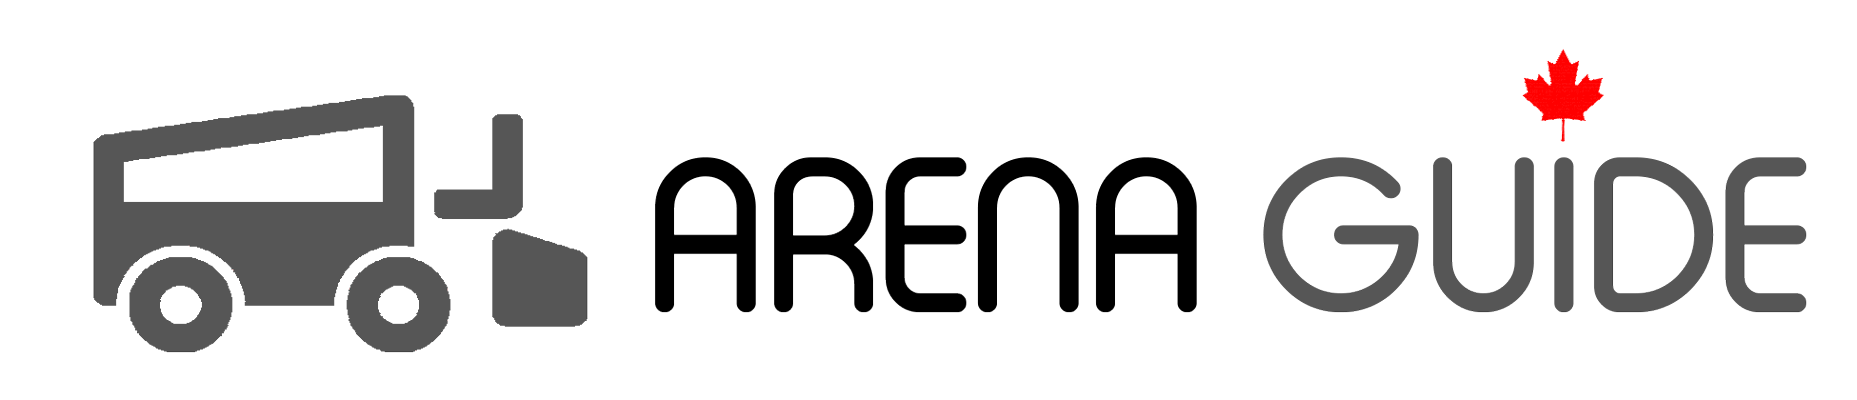 Little Caesars Arena Logo - Little Caesars Arena - Arena Guide Canada